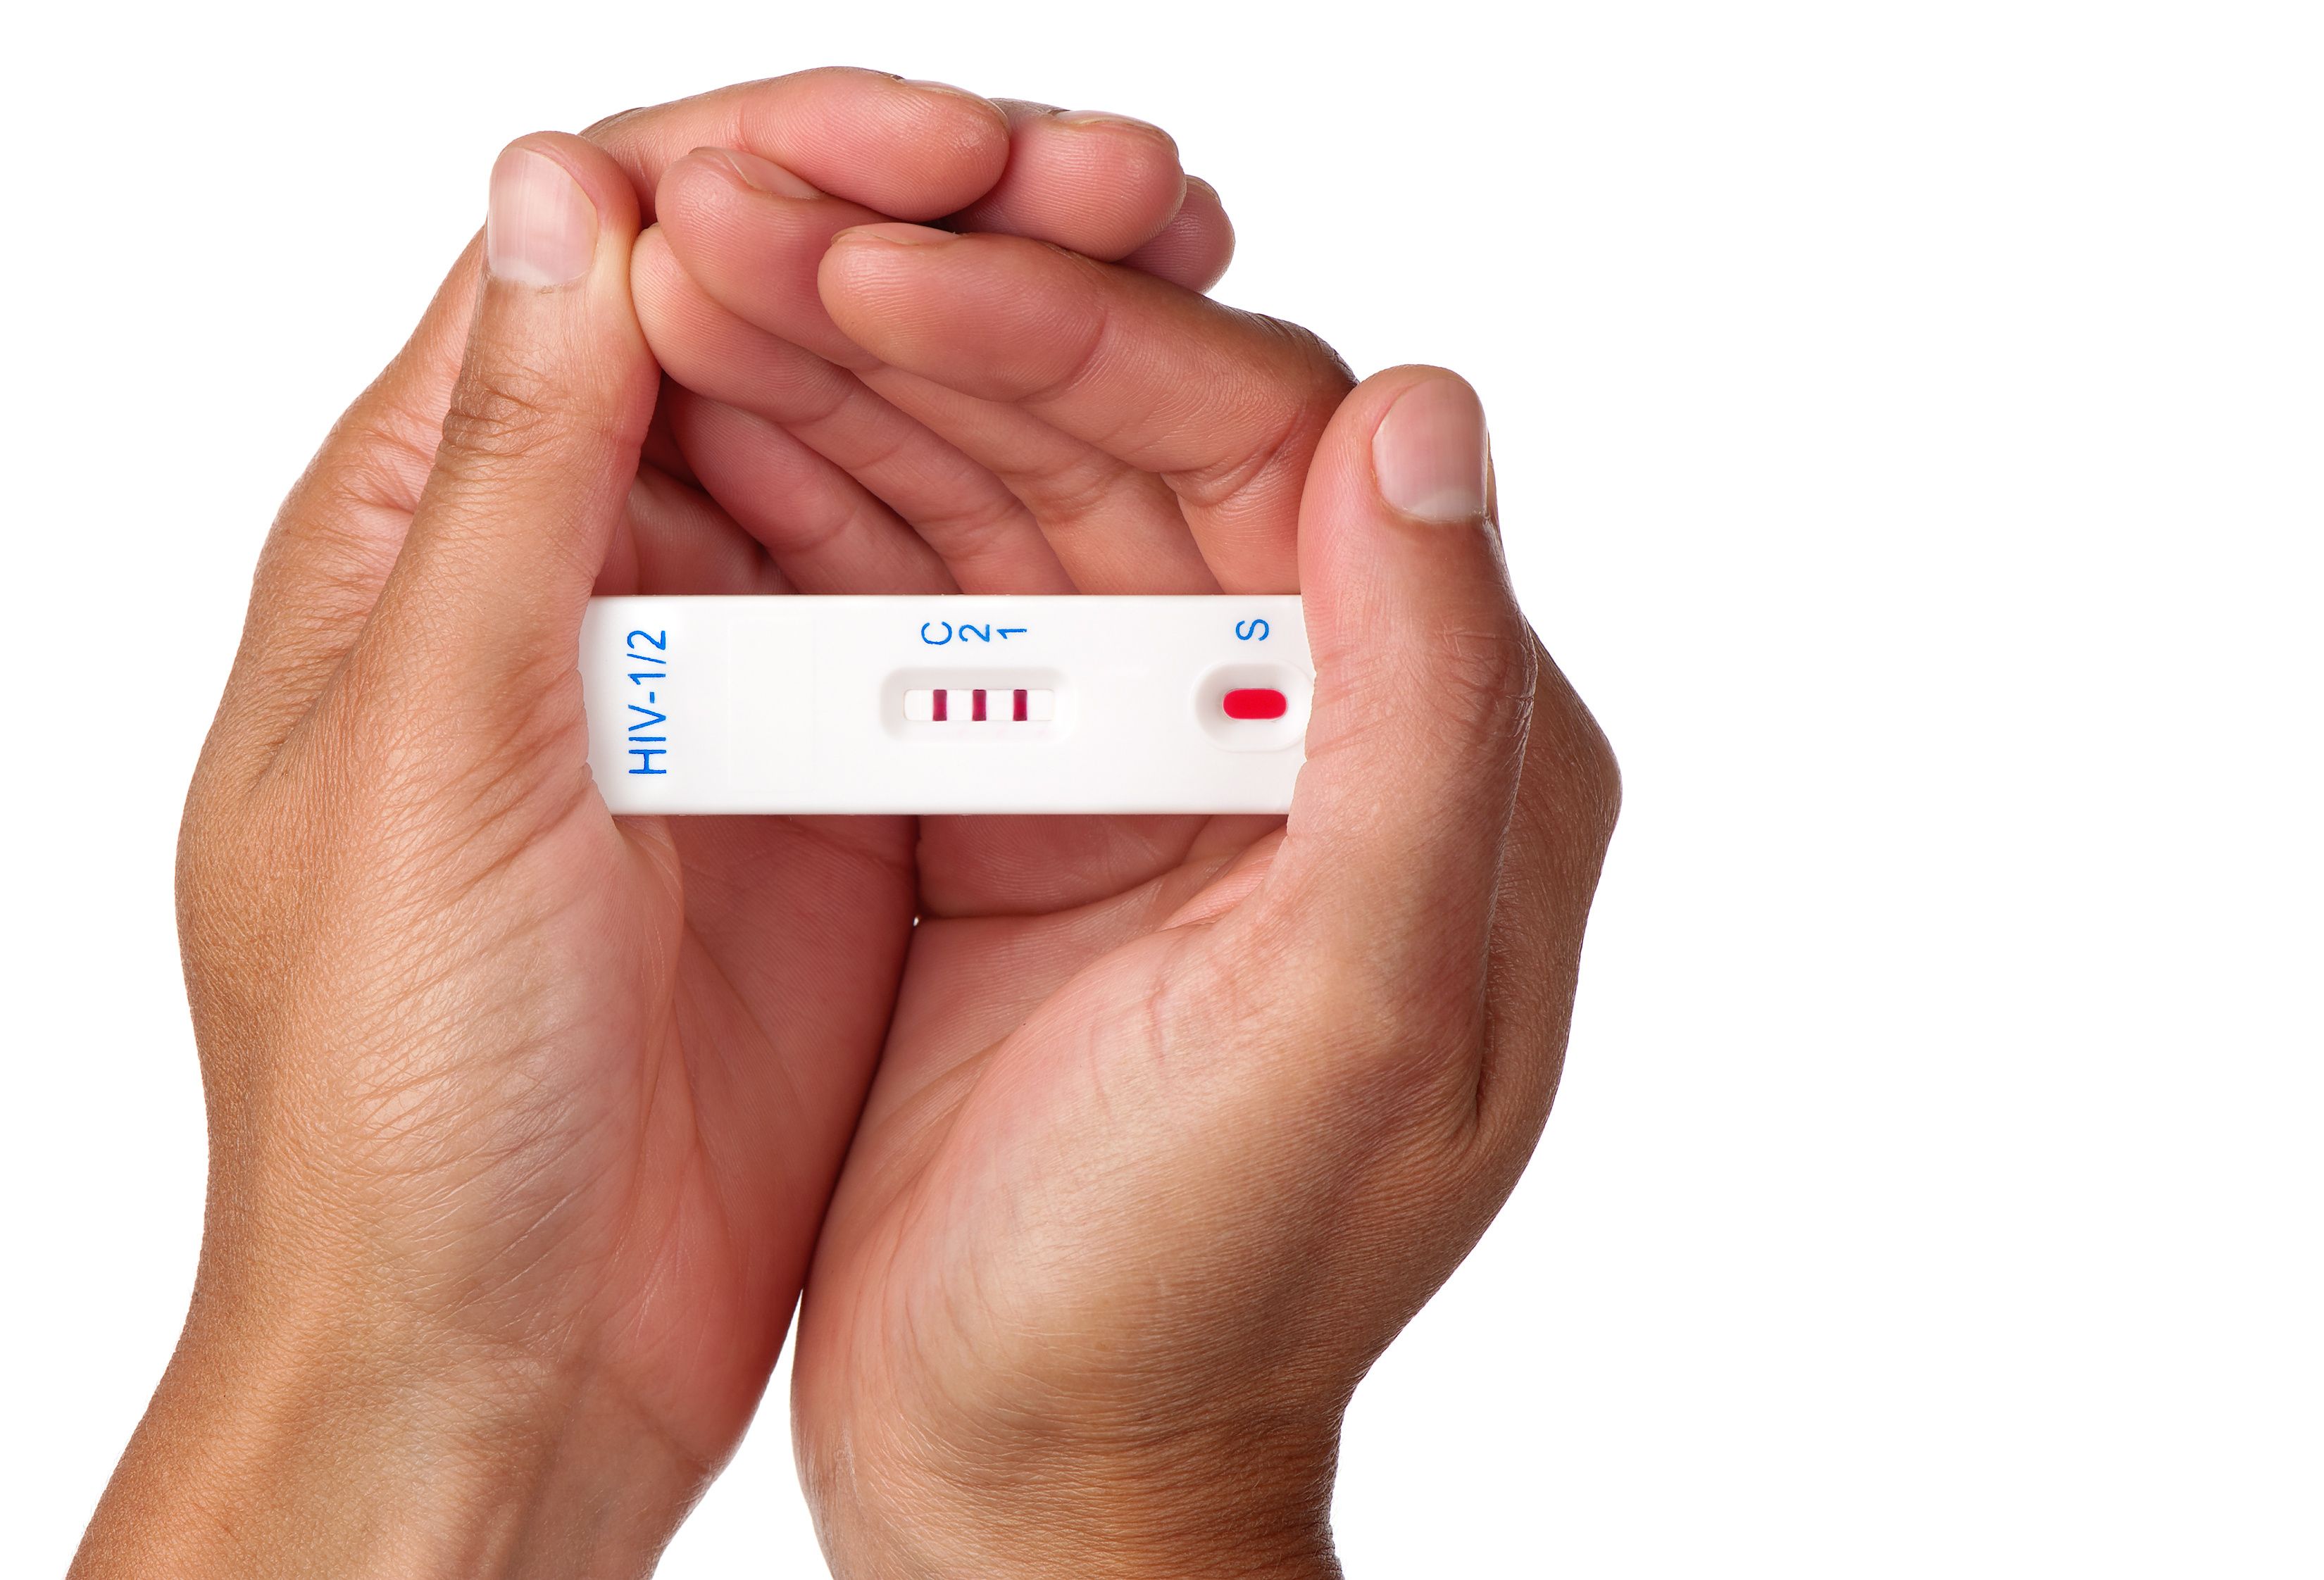 Rapid HIV test | Image credit: HBK - stock.adobe.com